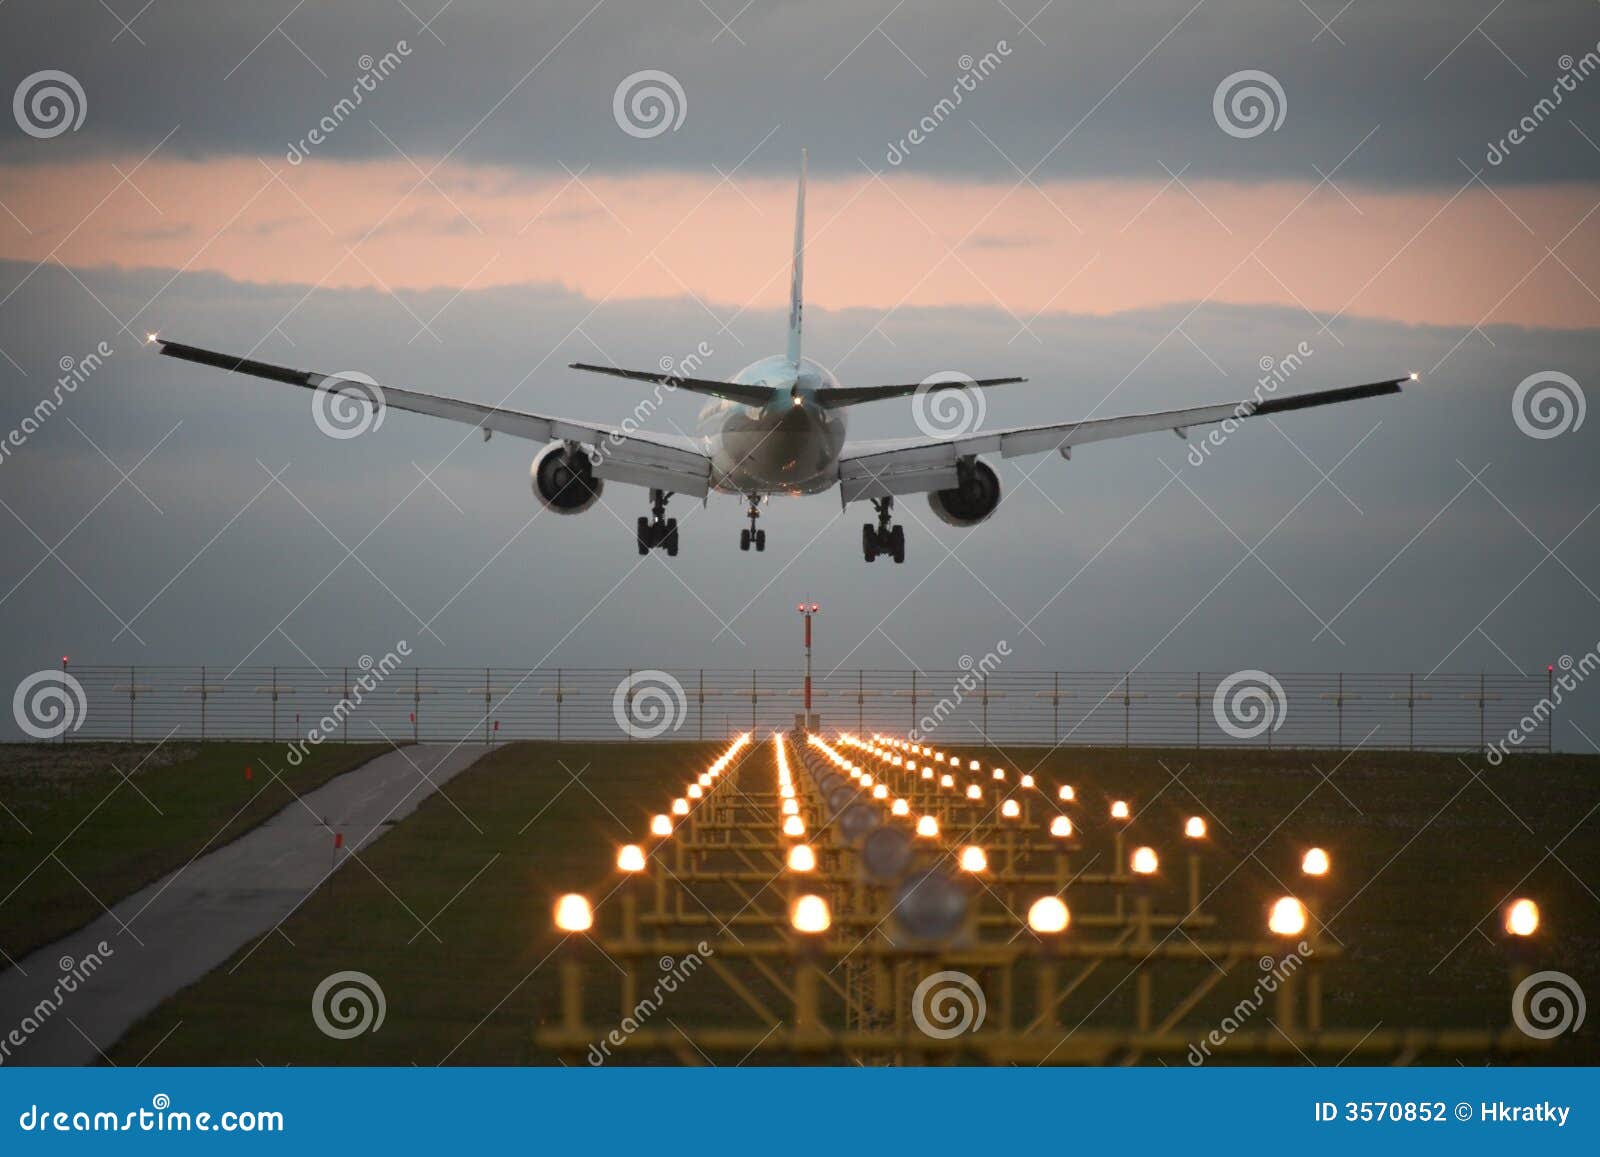 landing airplane